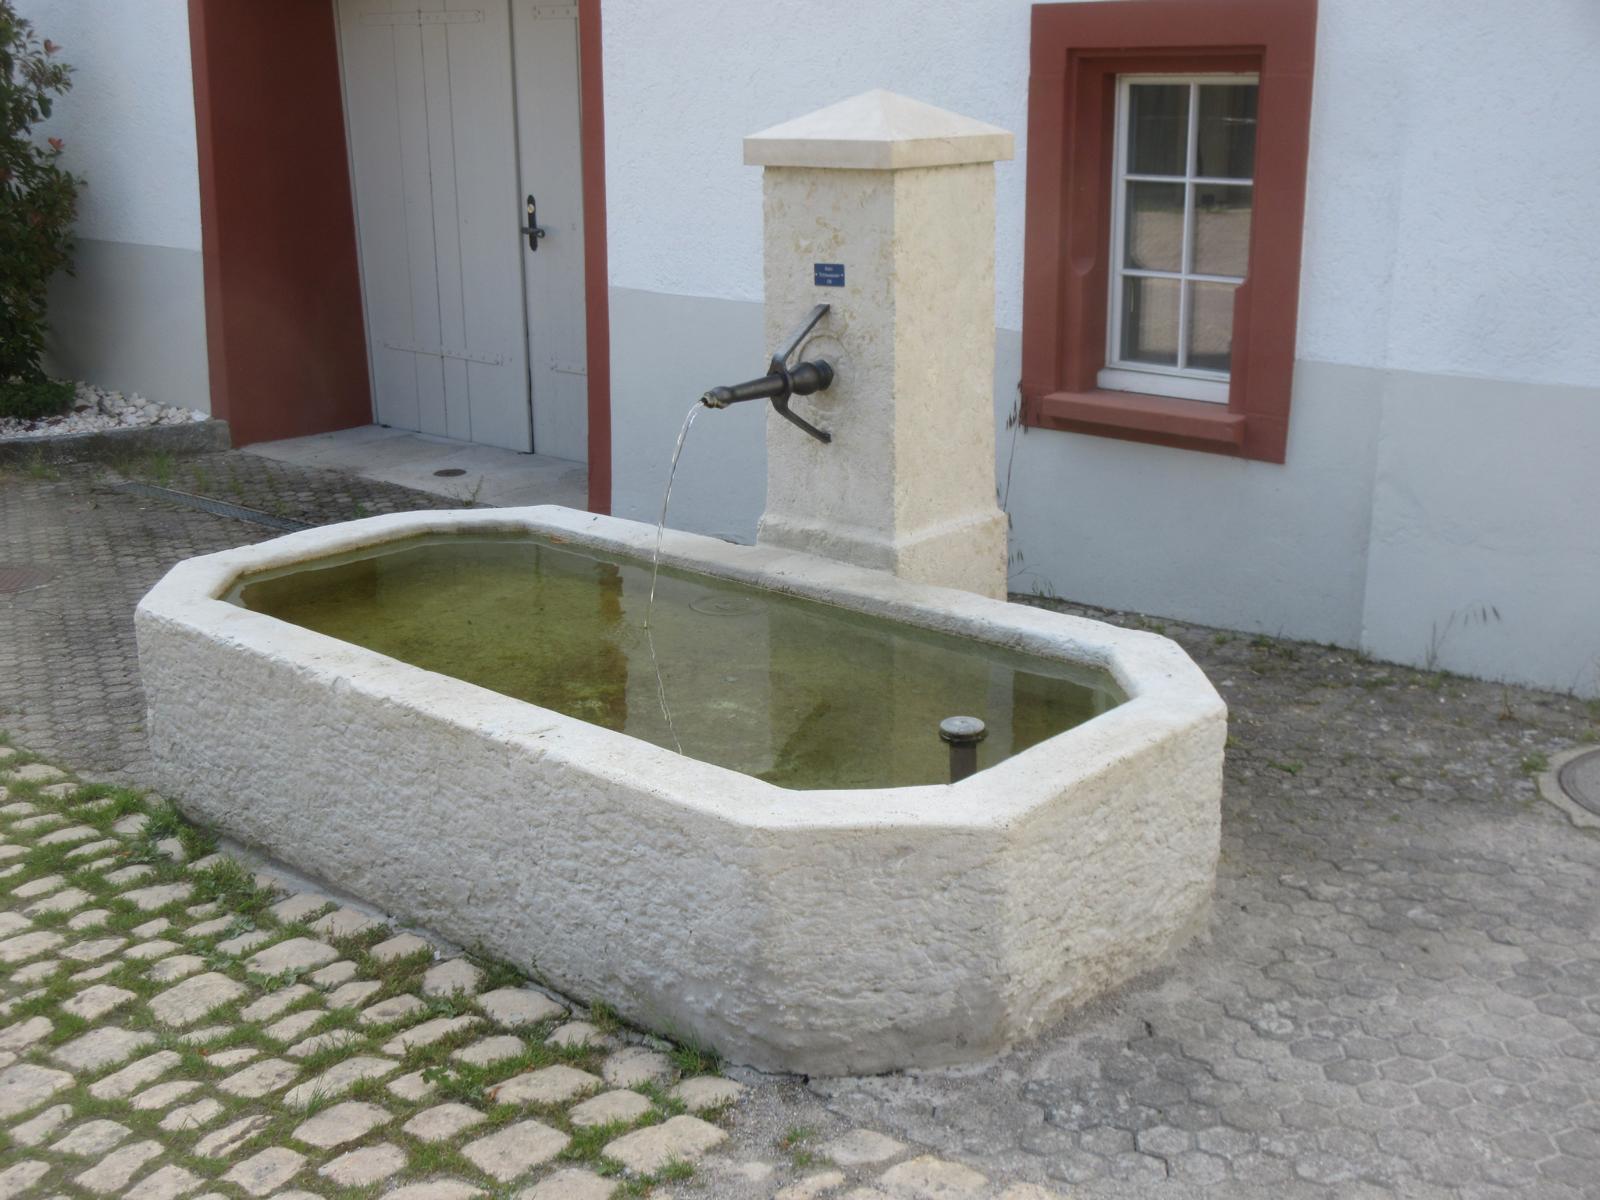 Pfarrhaus / Ormalingerstrasse 51 *** o.J. (19. Jh.); restauriert 2019 *** Solothurner Kalk mit Spiralschnecken (Nerineen) 1); Monolith 244 x 123 cm *** Solothurner Kalk mit Nerineen *** "Kein Trinkwasser", Brunnen Nr. 8; die Brunnen 8 - 10 beziehen ihr Wasser von einer gemeinsamen Quelle.